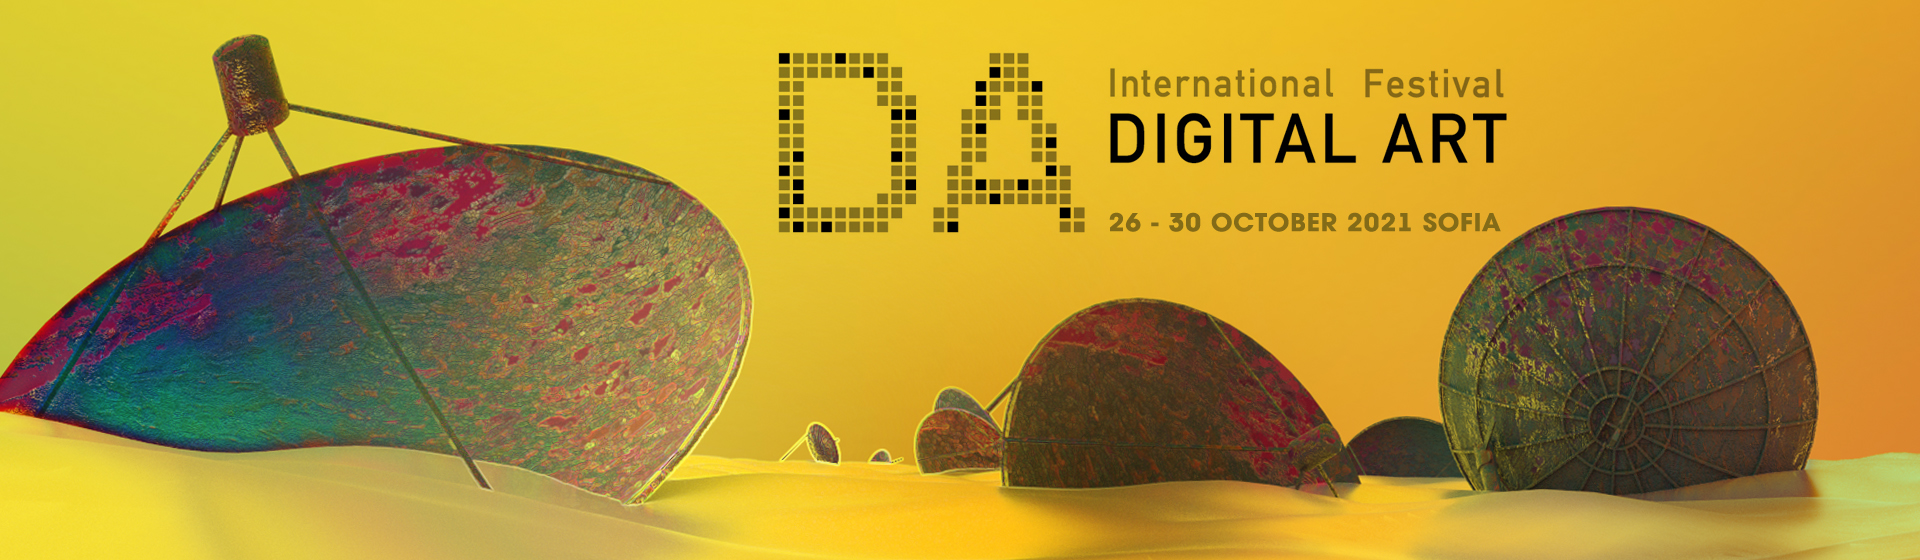 Eighth International Digital Arts Festival, Sofia (2021)